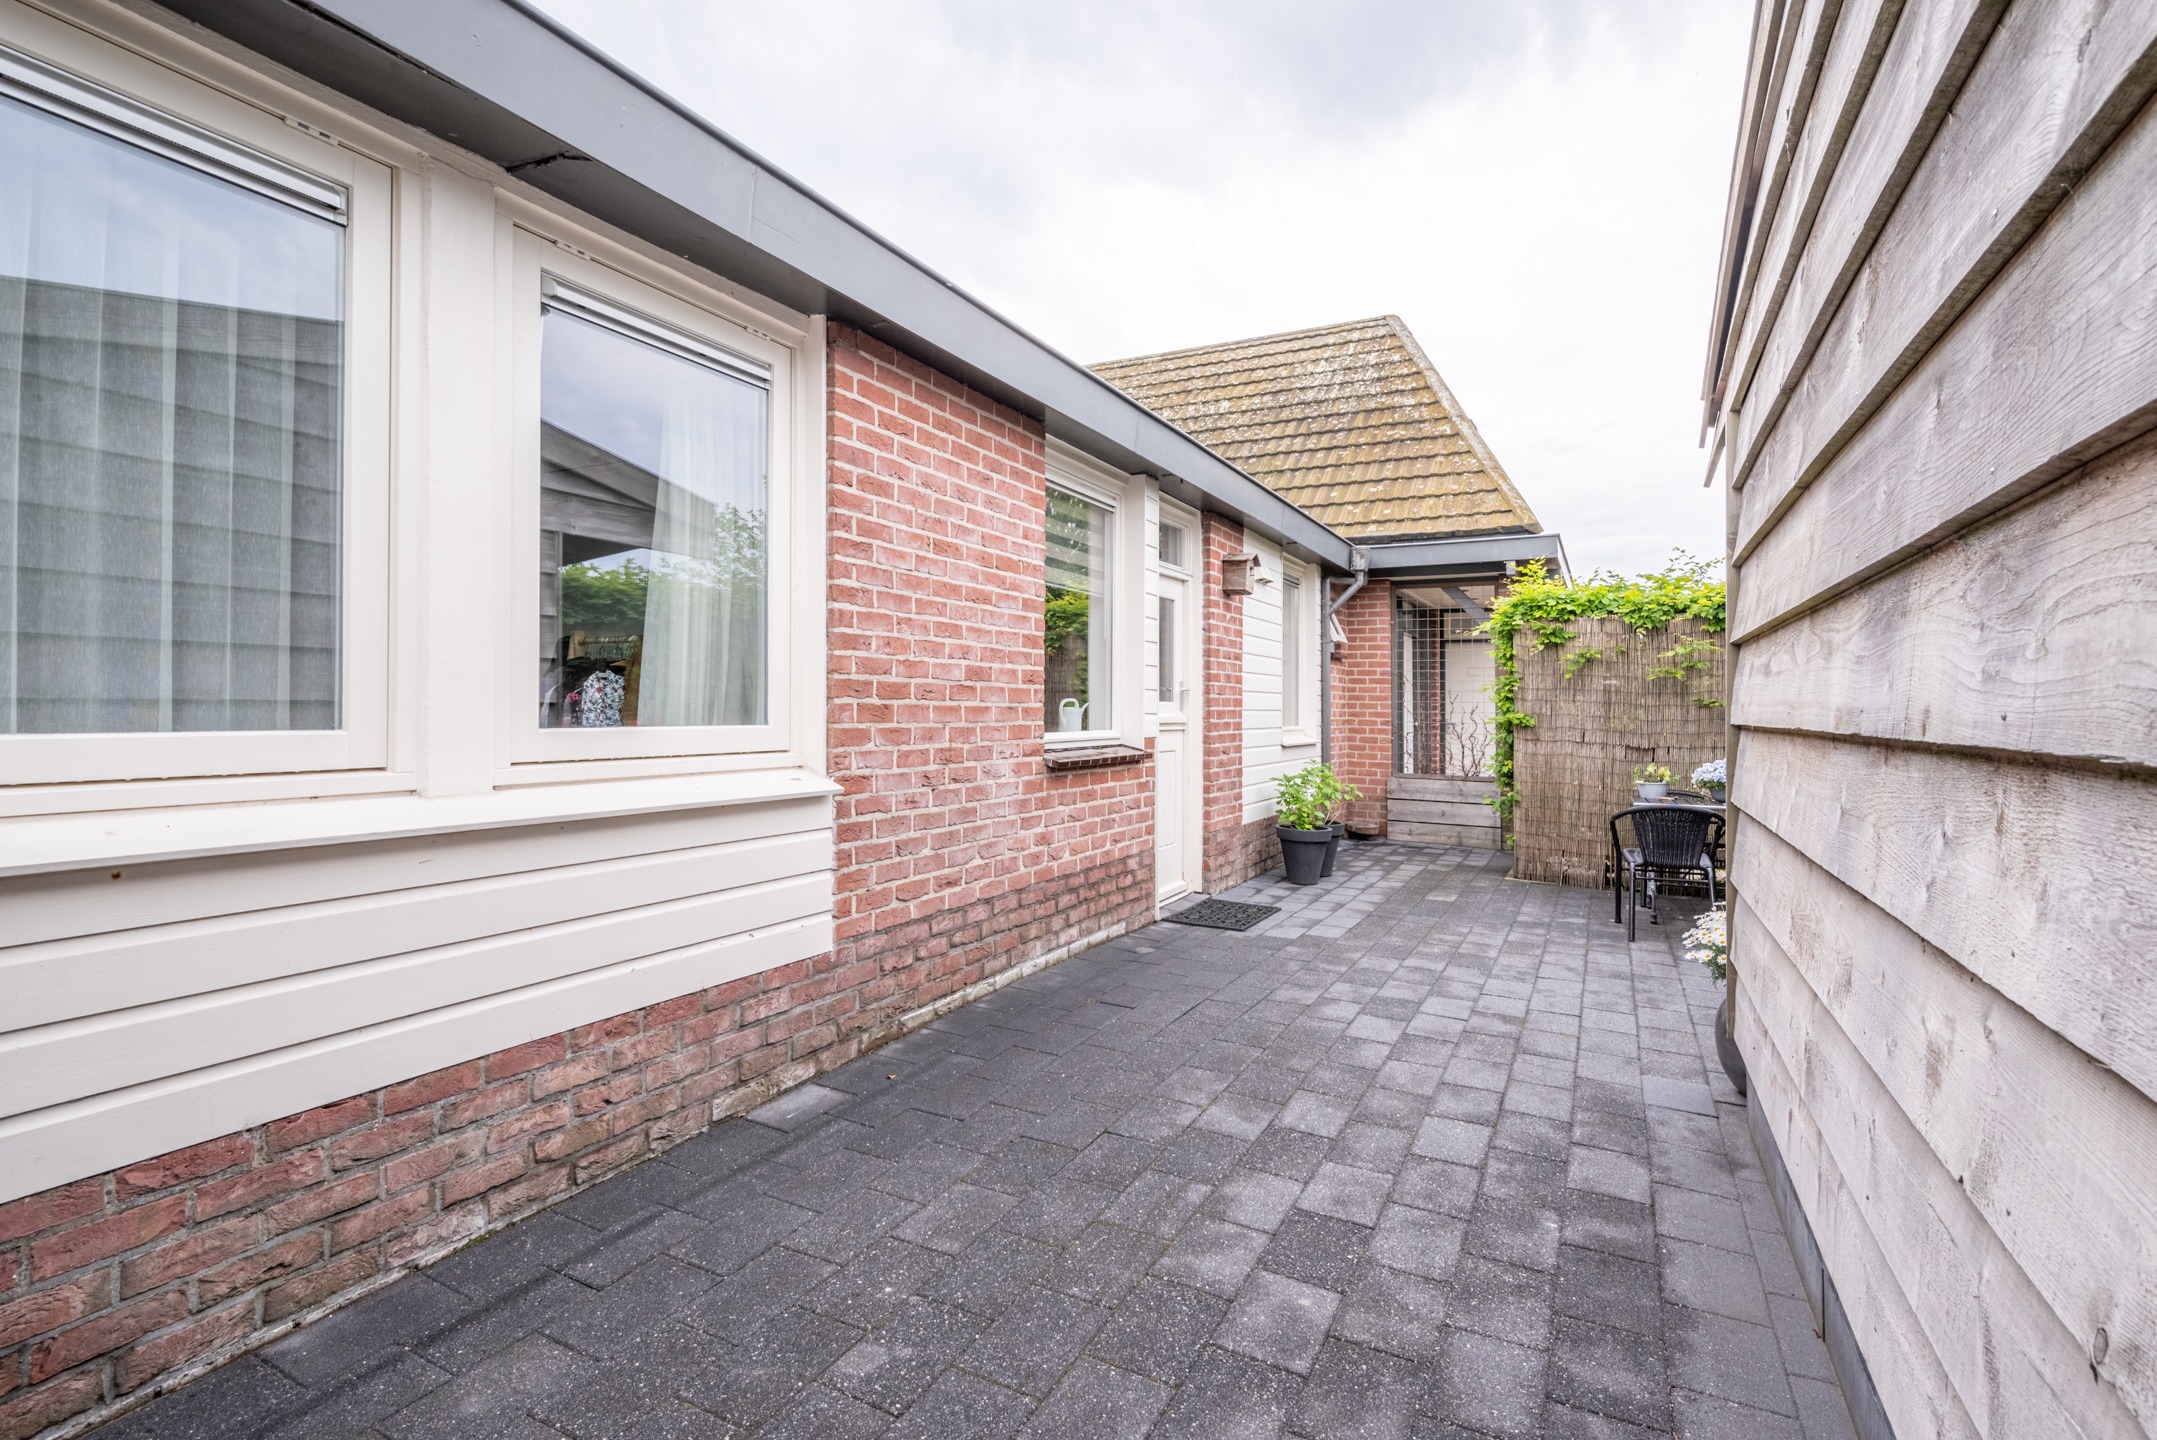 Woning / appartement - Serooskerke - Oostkapelseweg 32